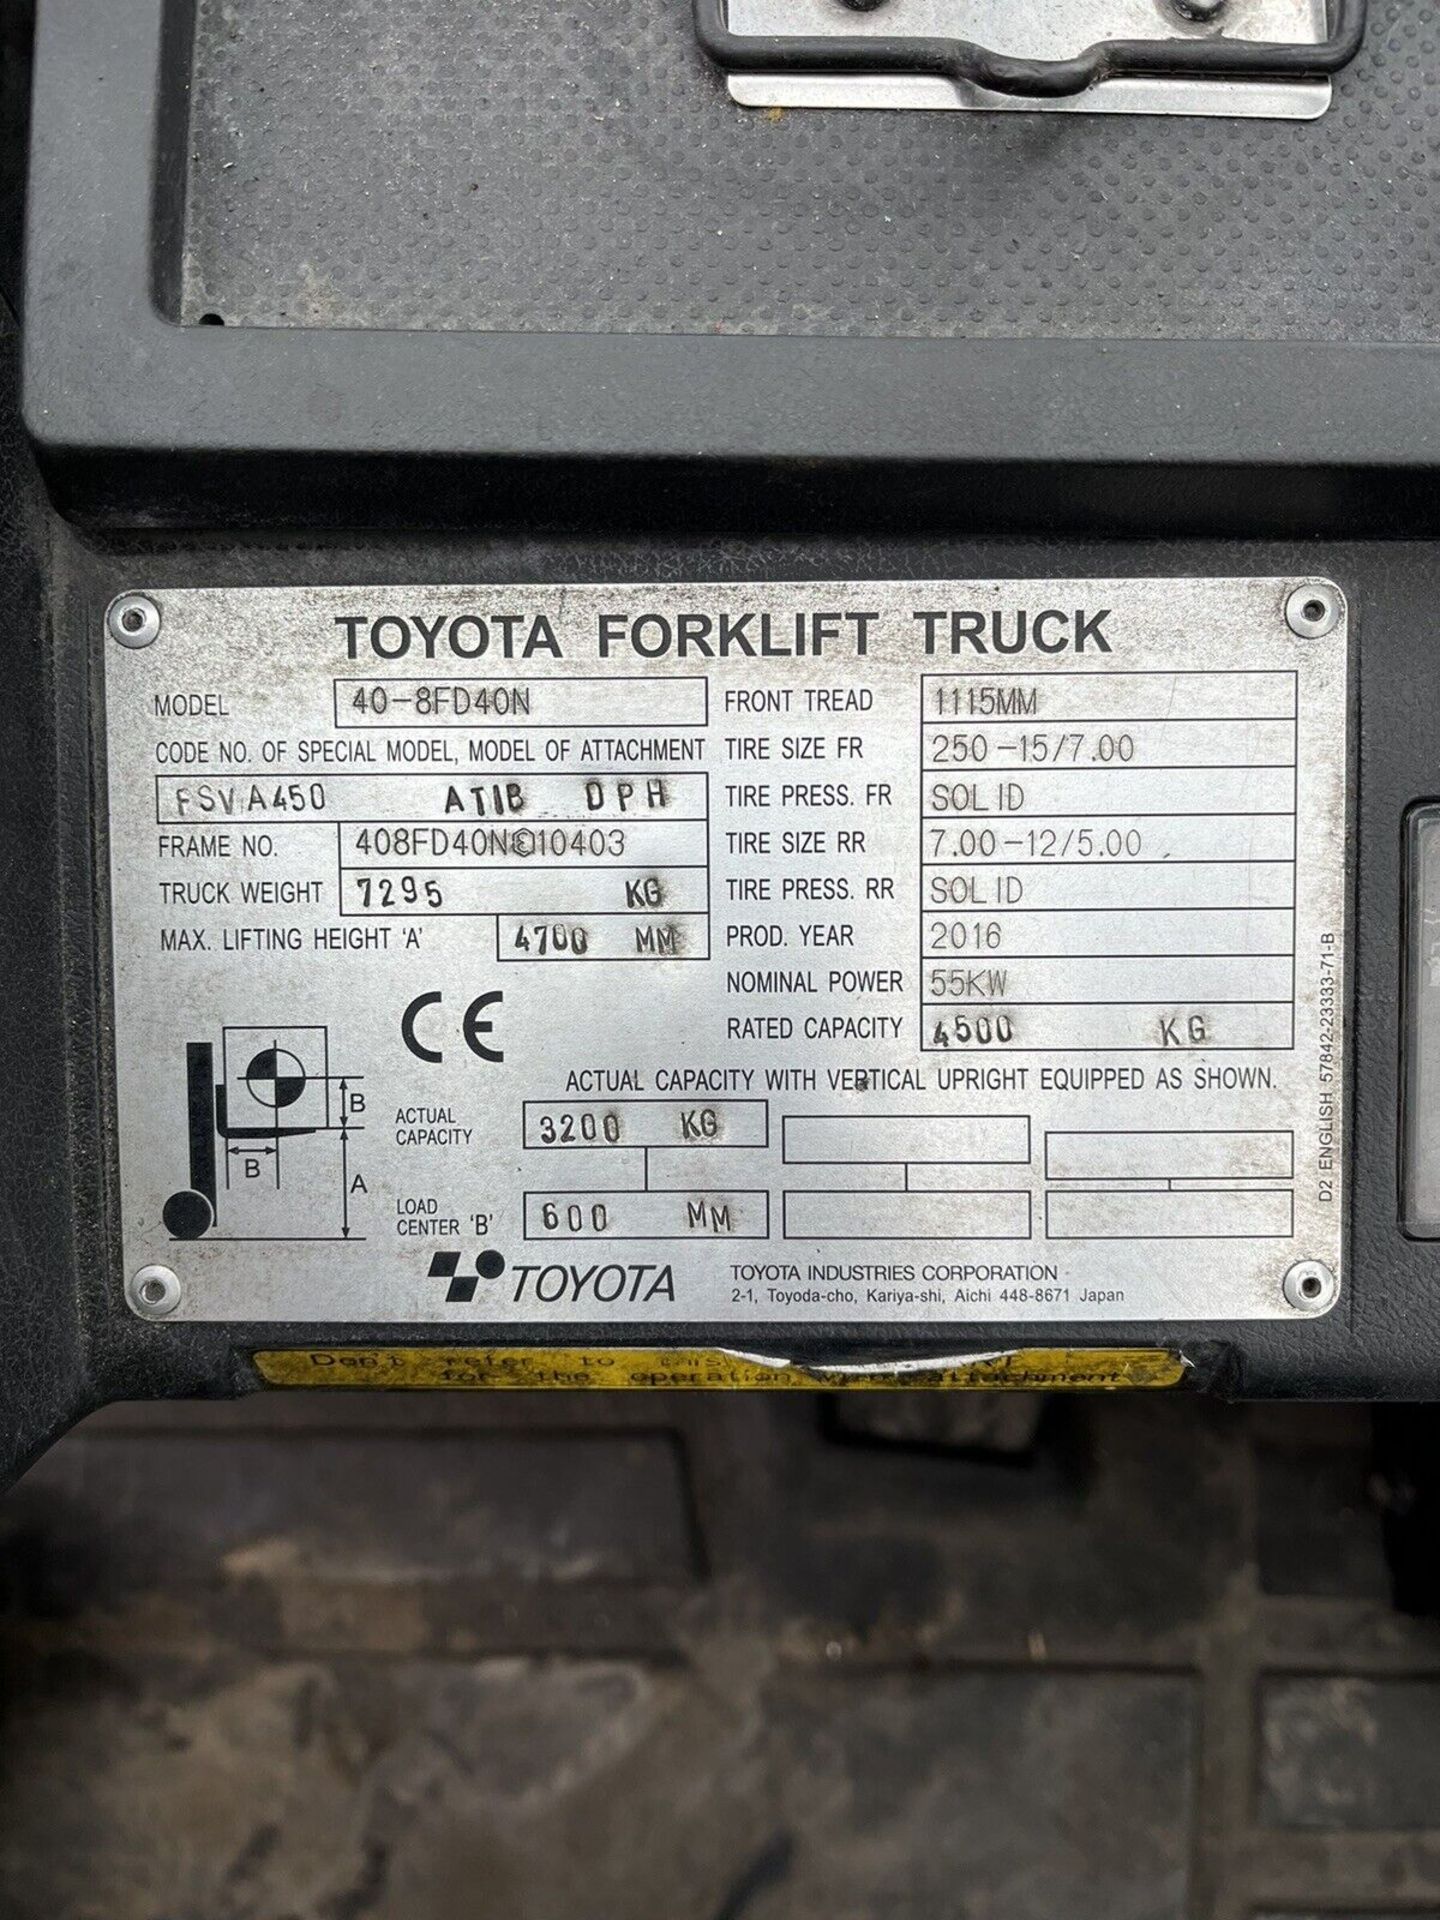 2016, TOYOTA 40-8FD40N - 4 Tonne Diesel Forklift (4.5 Tonne at 500 Load Center) - Image 5 of 8